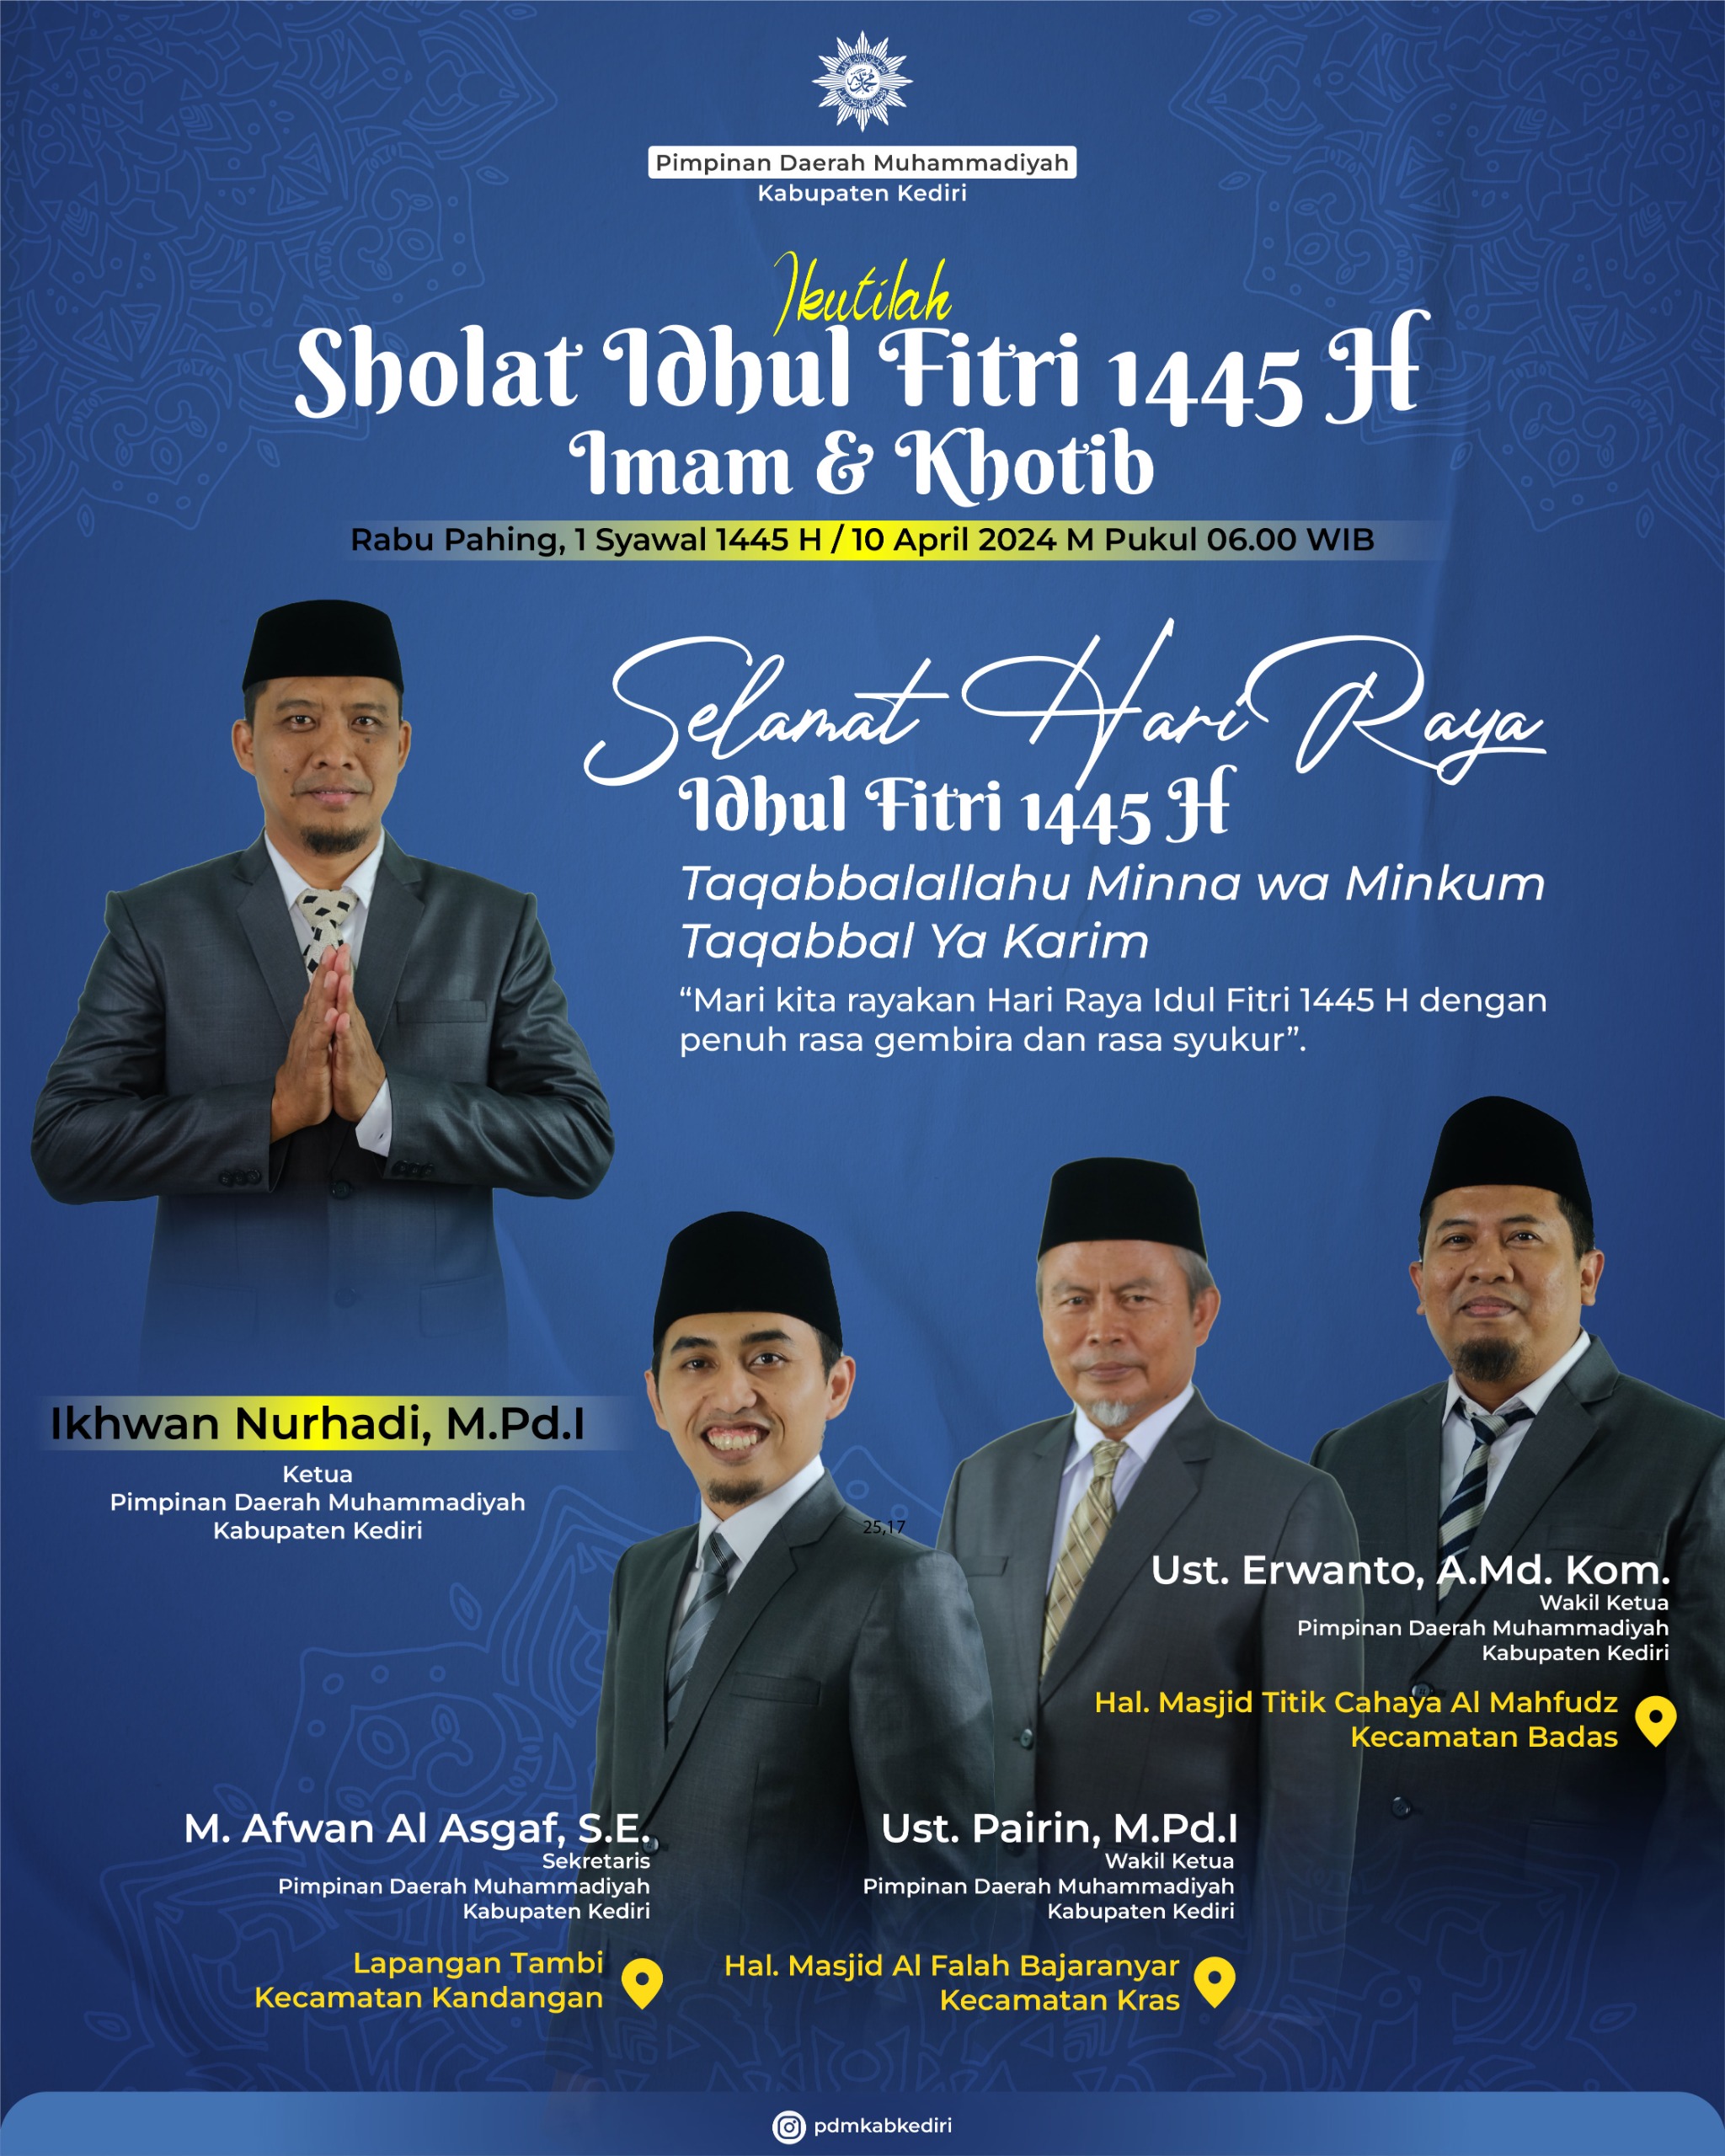 Muhammadiyah Kabupaten Kediri